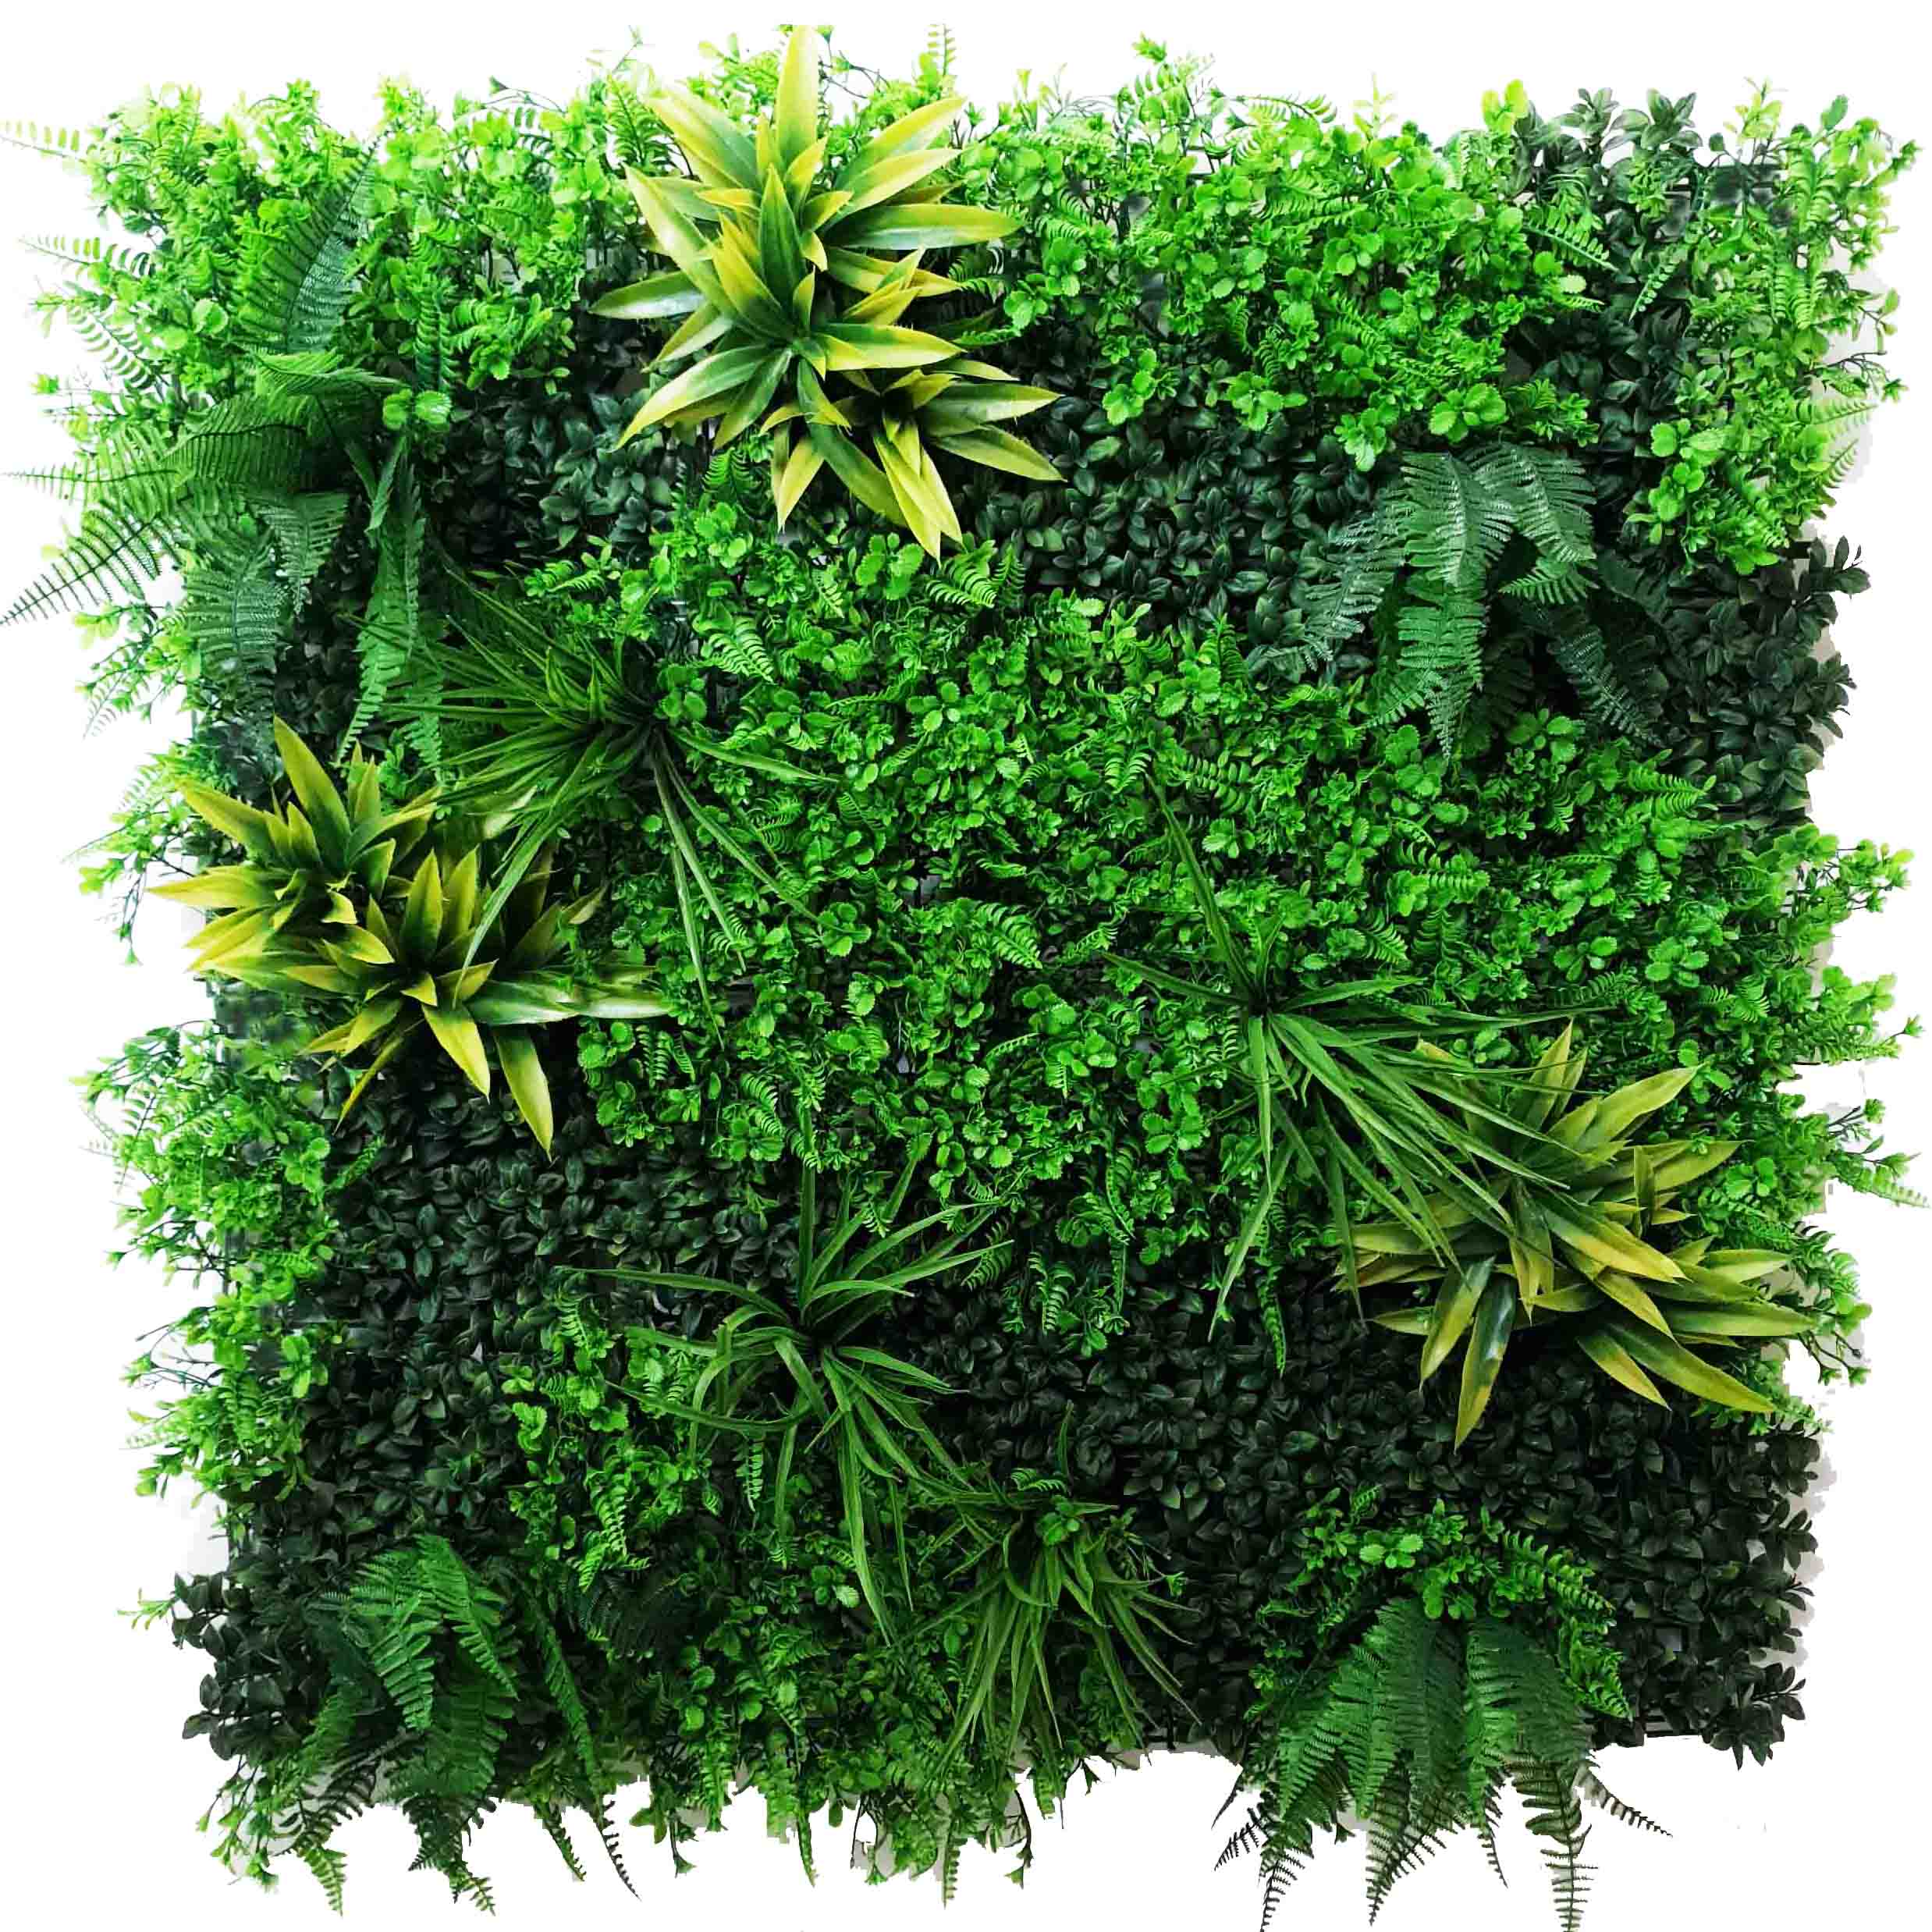 Artificial Vertical Garden | Fake wall garden | UV resistant outdoor wall garden | Fire Resistant